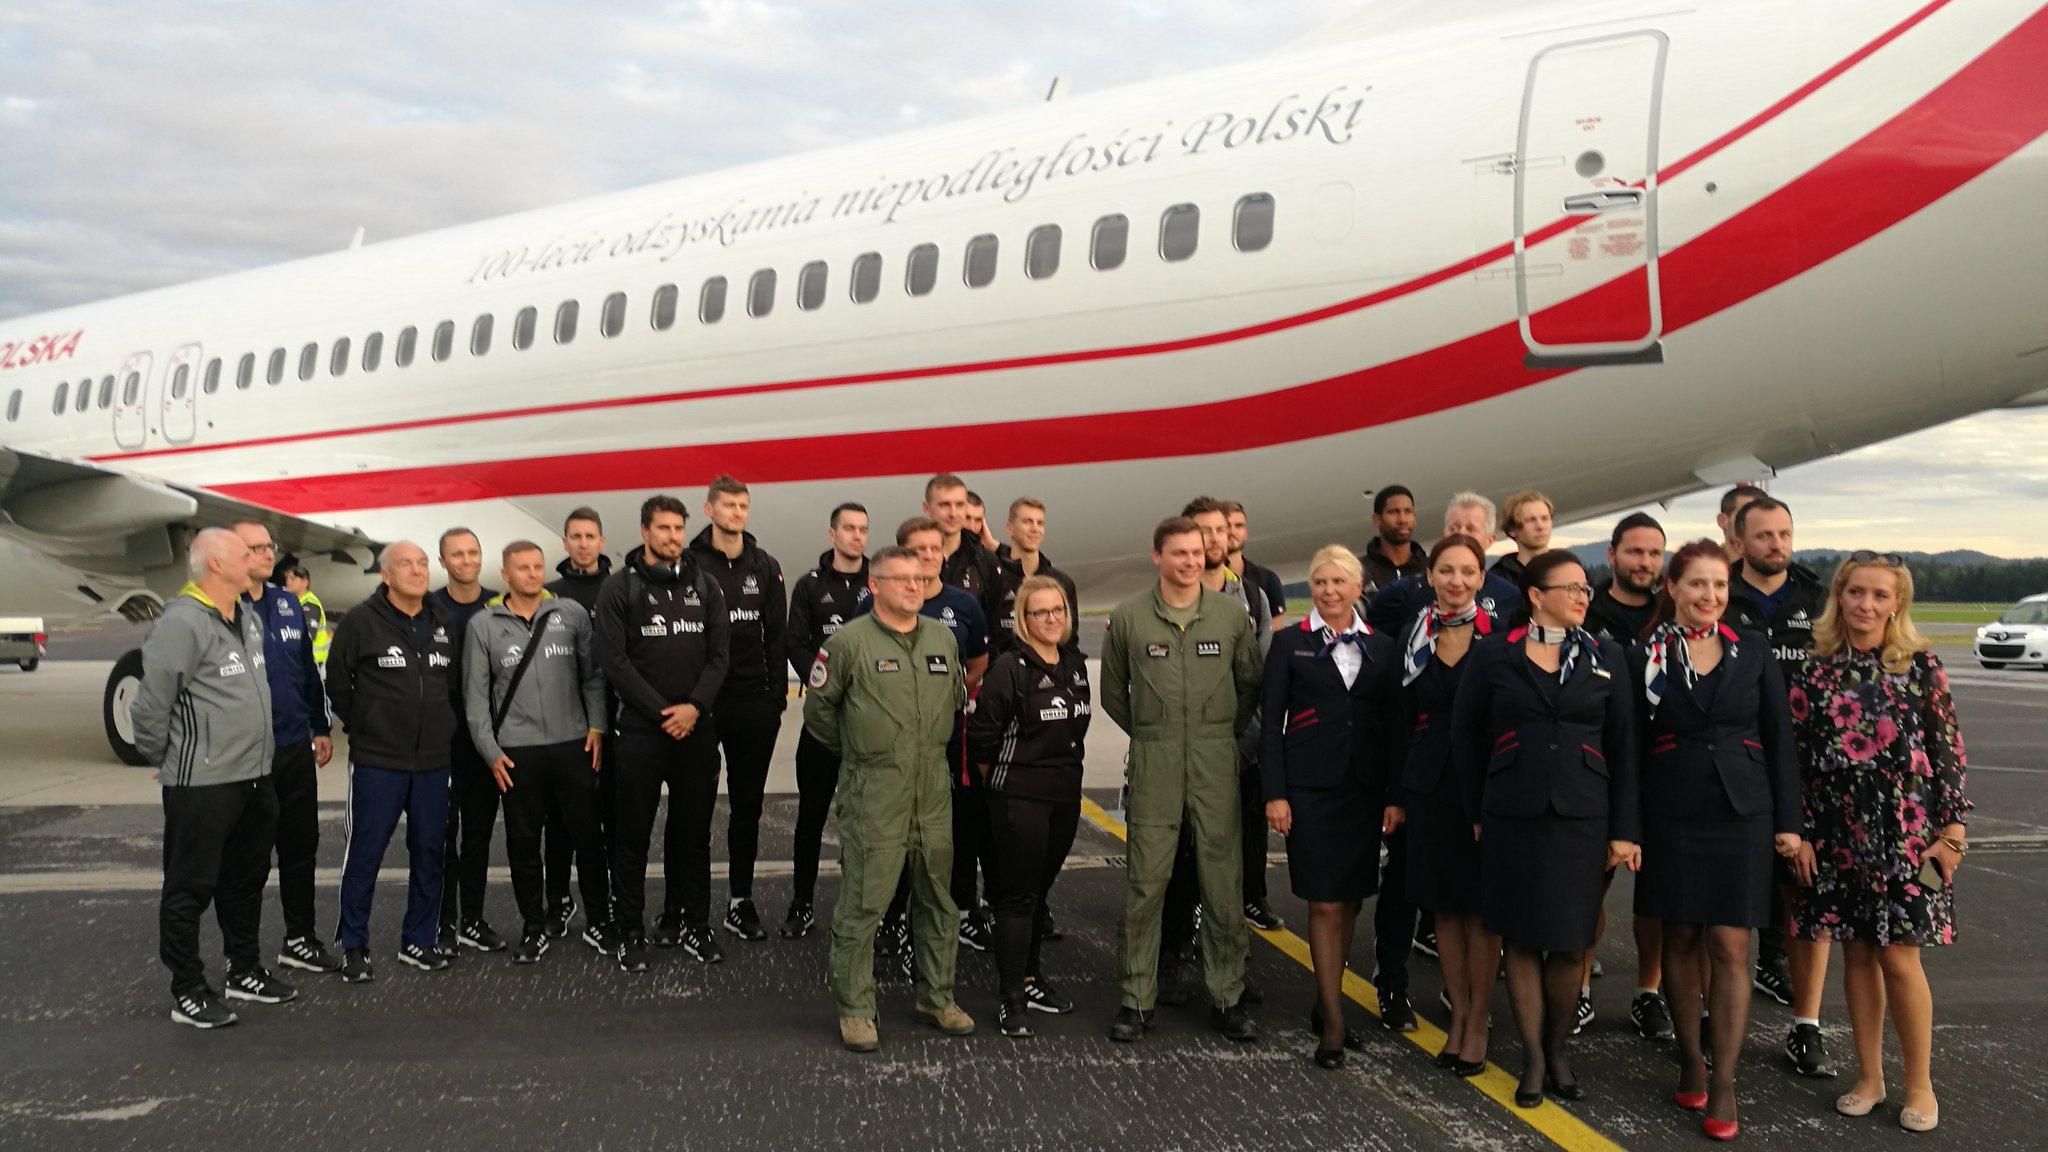 Премьер-министр Польши выделил правительственный самолет сборной по волейболу